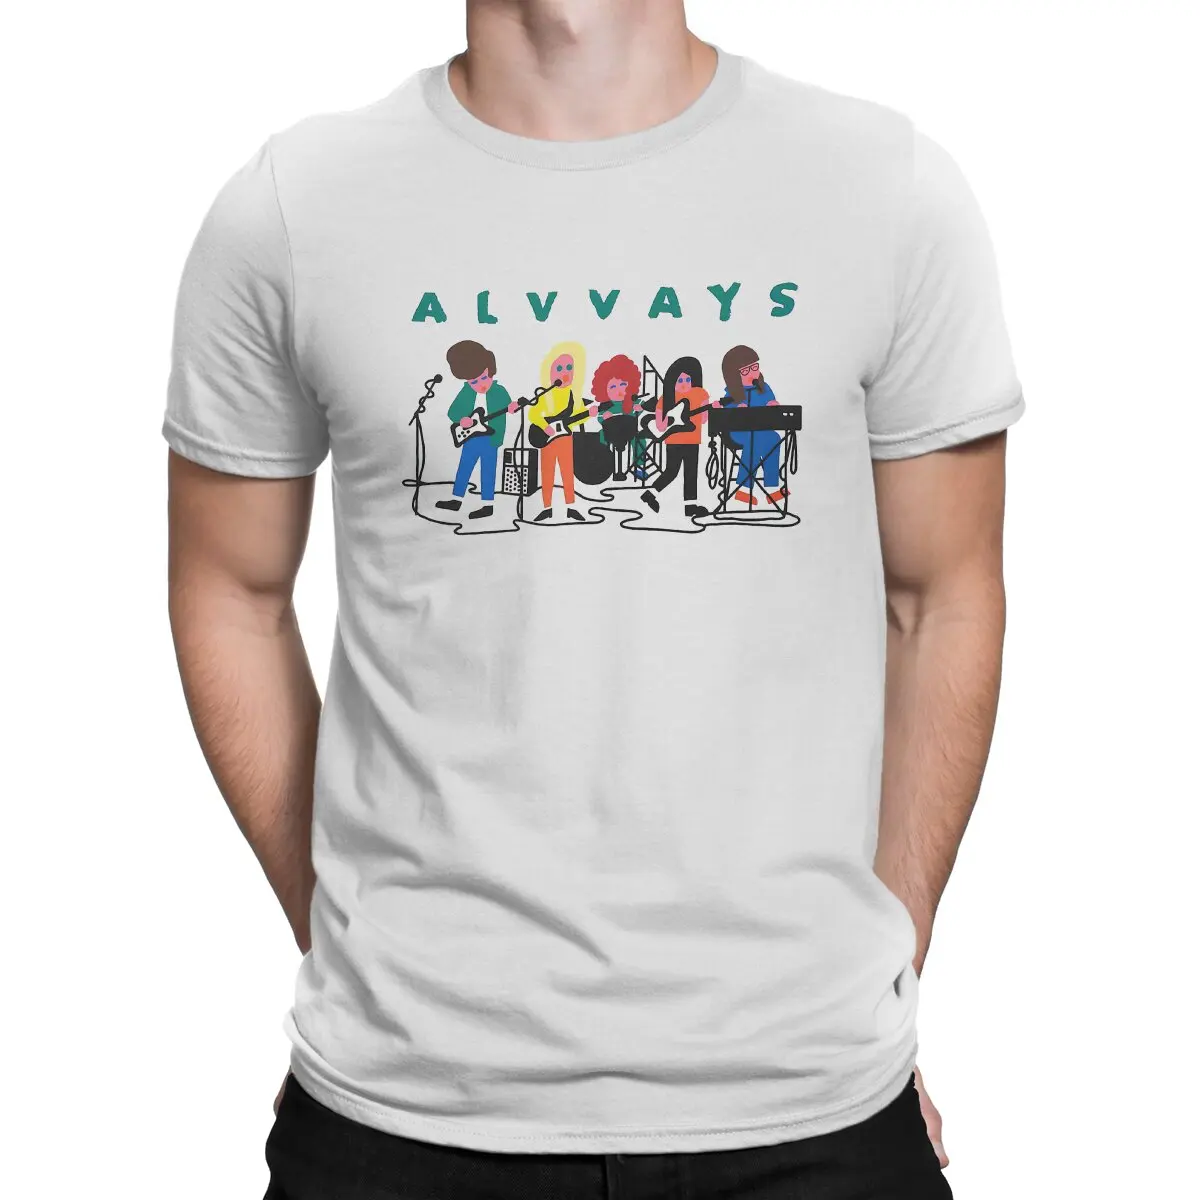 Футболки с рисунком группы, мужская футболка из чистого хлопка, новинка, круглый вырез, футболка Alvvays, Одежда с коротким рукавом, лето